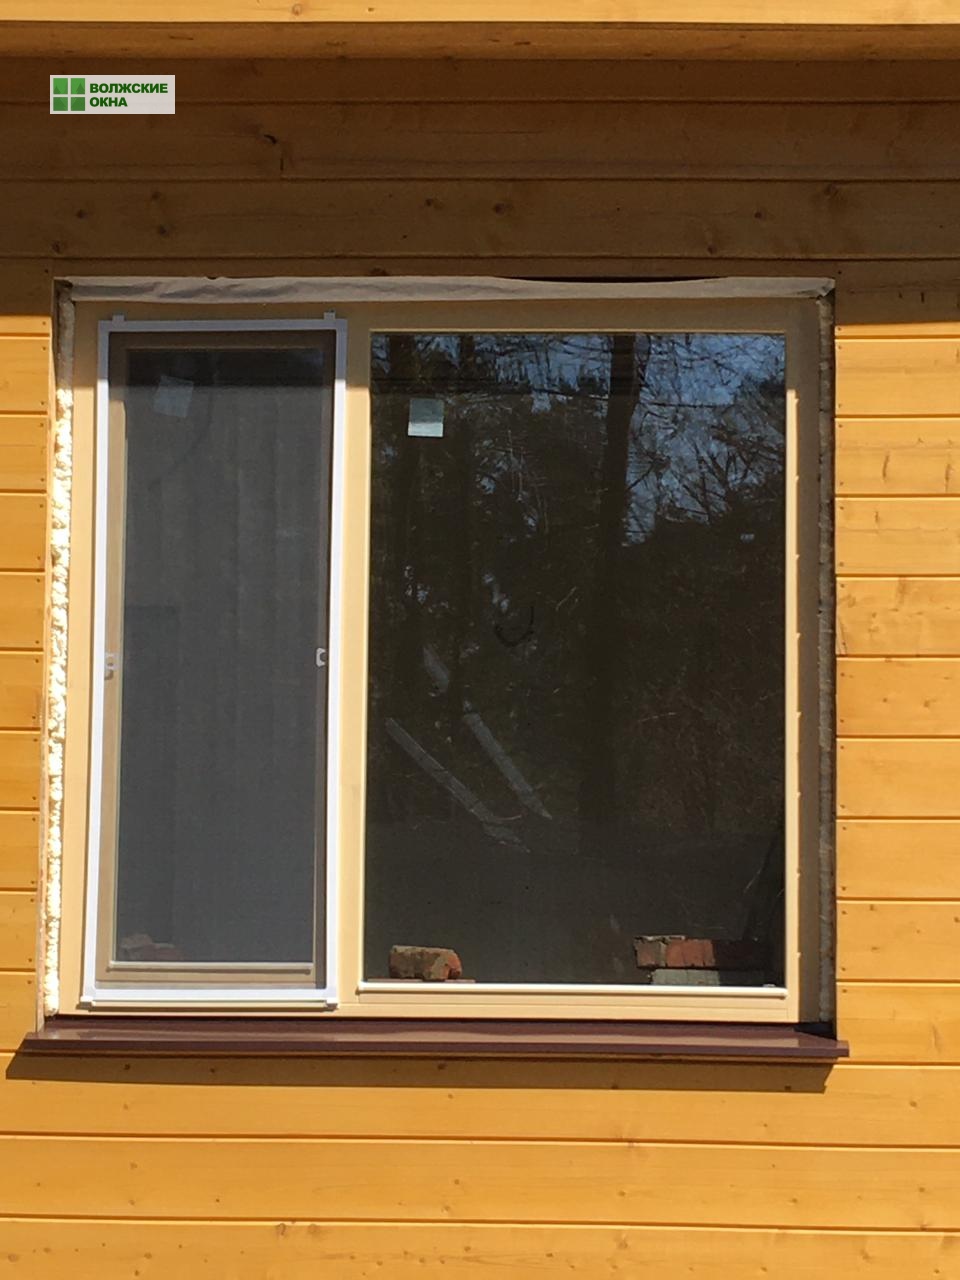 деревянные окна Москва, купить деревянные окна в Москве, евроокна из дерева, окна из дерева, деревянные евроокна, финские окна, деревянные окна со стеклопакетом, экологичные окна, окна из сосны, окна из лиственницы, окна из дуба, волжские окна, деревянные окна цена, калькулятор деревянных окон